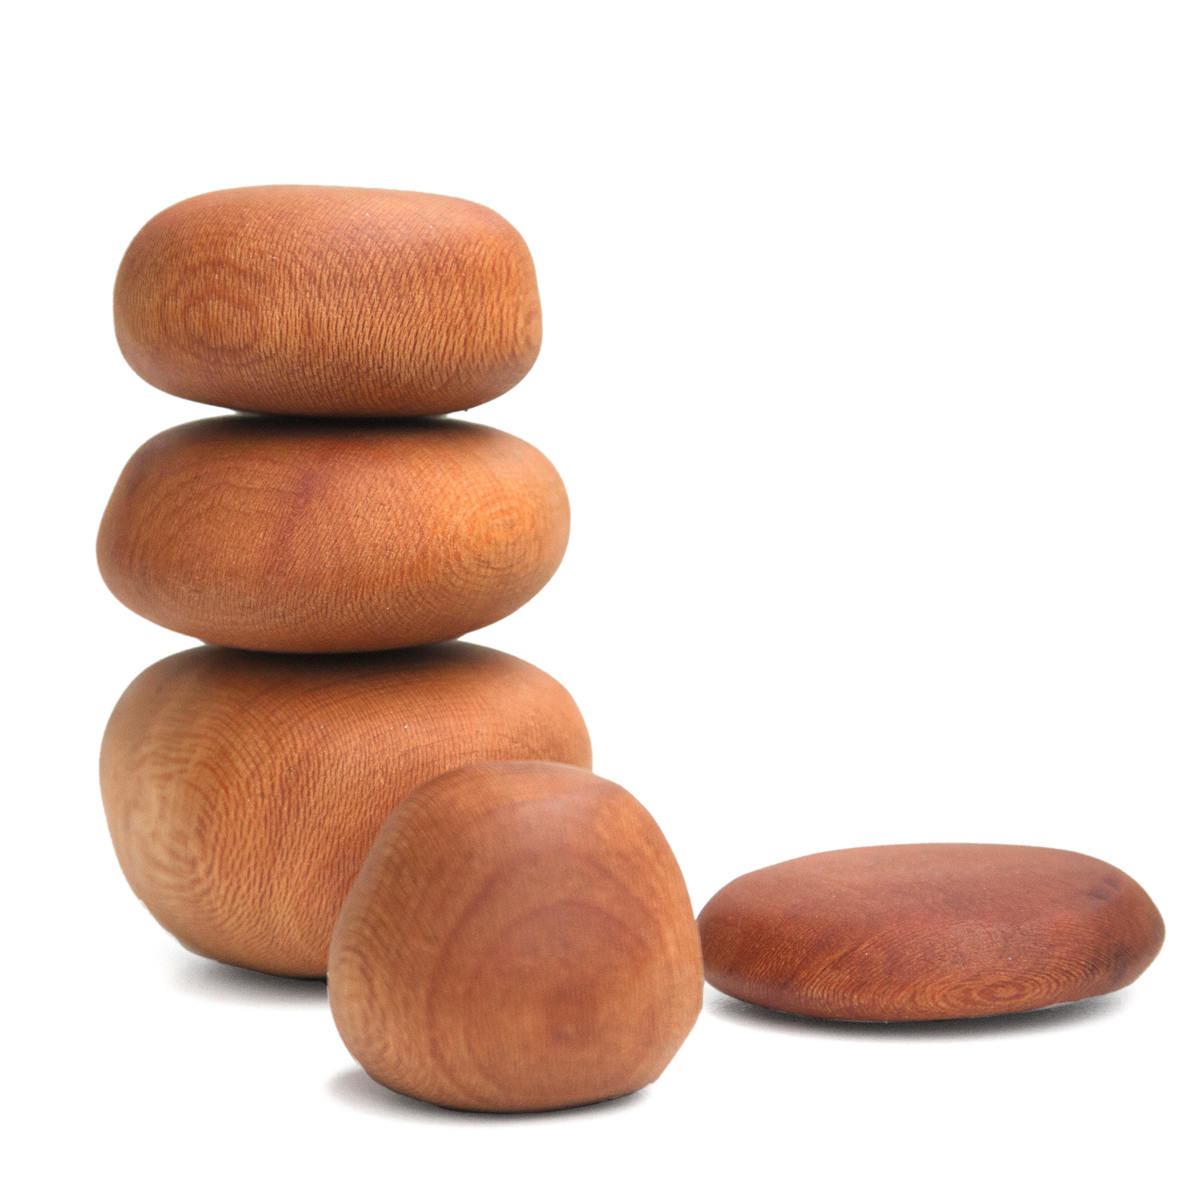 Meditative Balancing Rocks made of Sycamore Wood